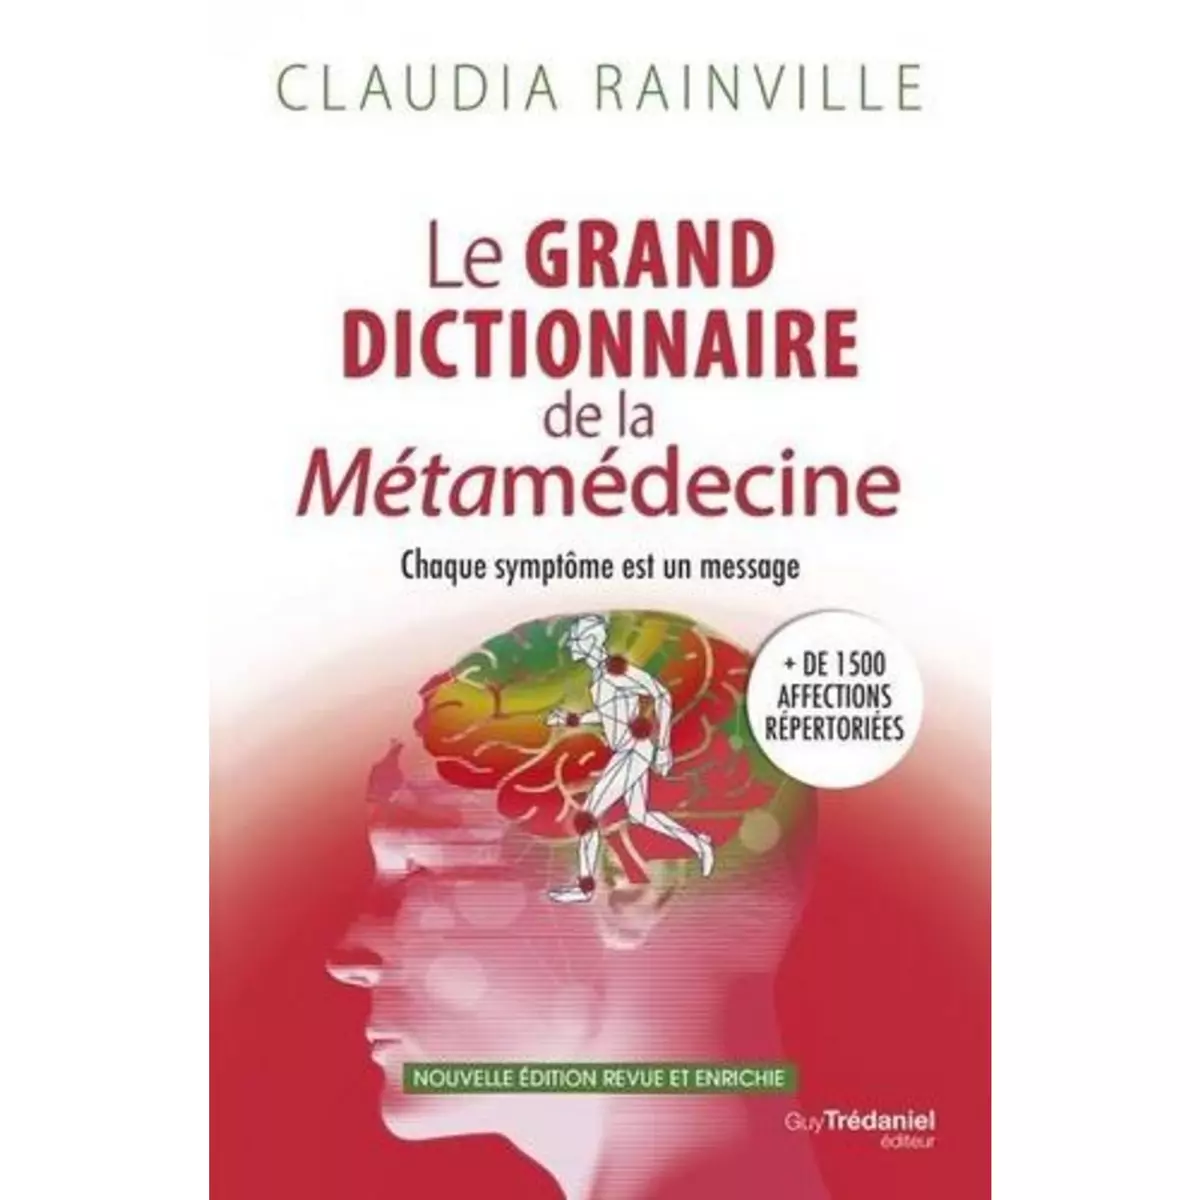  LE GRAND DICTIONNAIRE DE LA METAMEDECINE. CHAQUE SYMPTOME EST UN MESSAGE, EDITION REVUE ET AUGMENTEE, Rainville Claudia